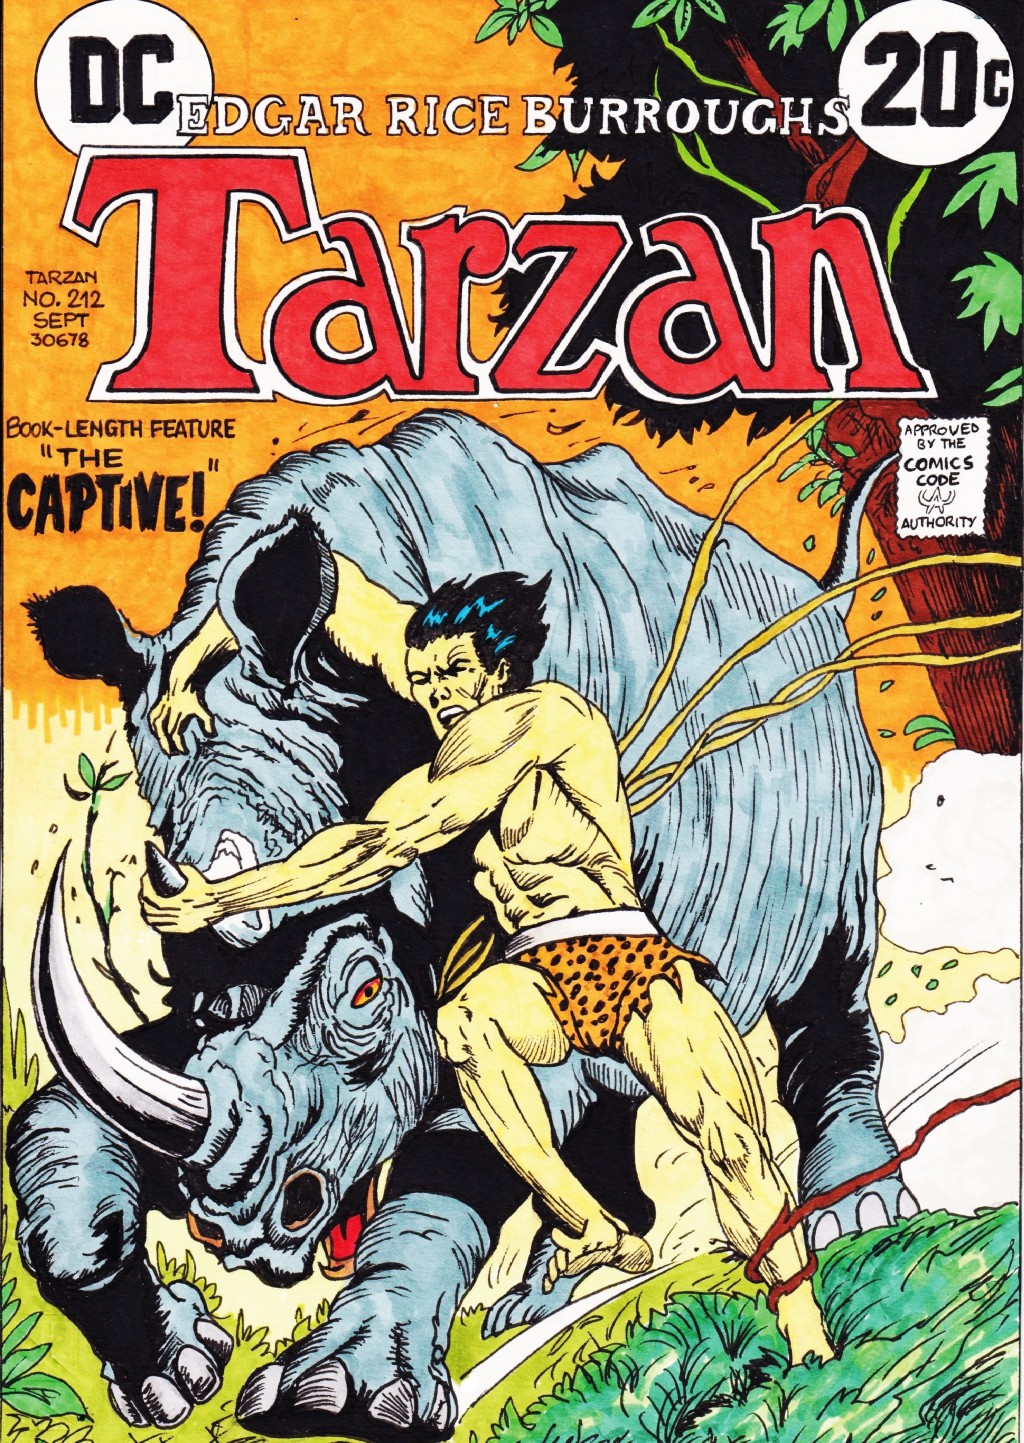 Tarzan: “The Captive!”